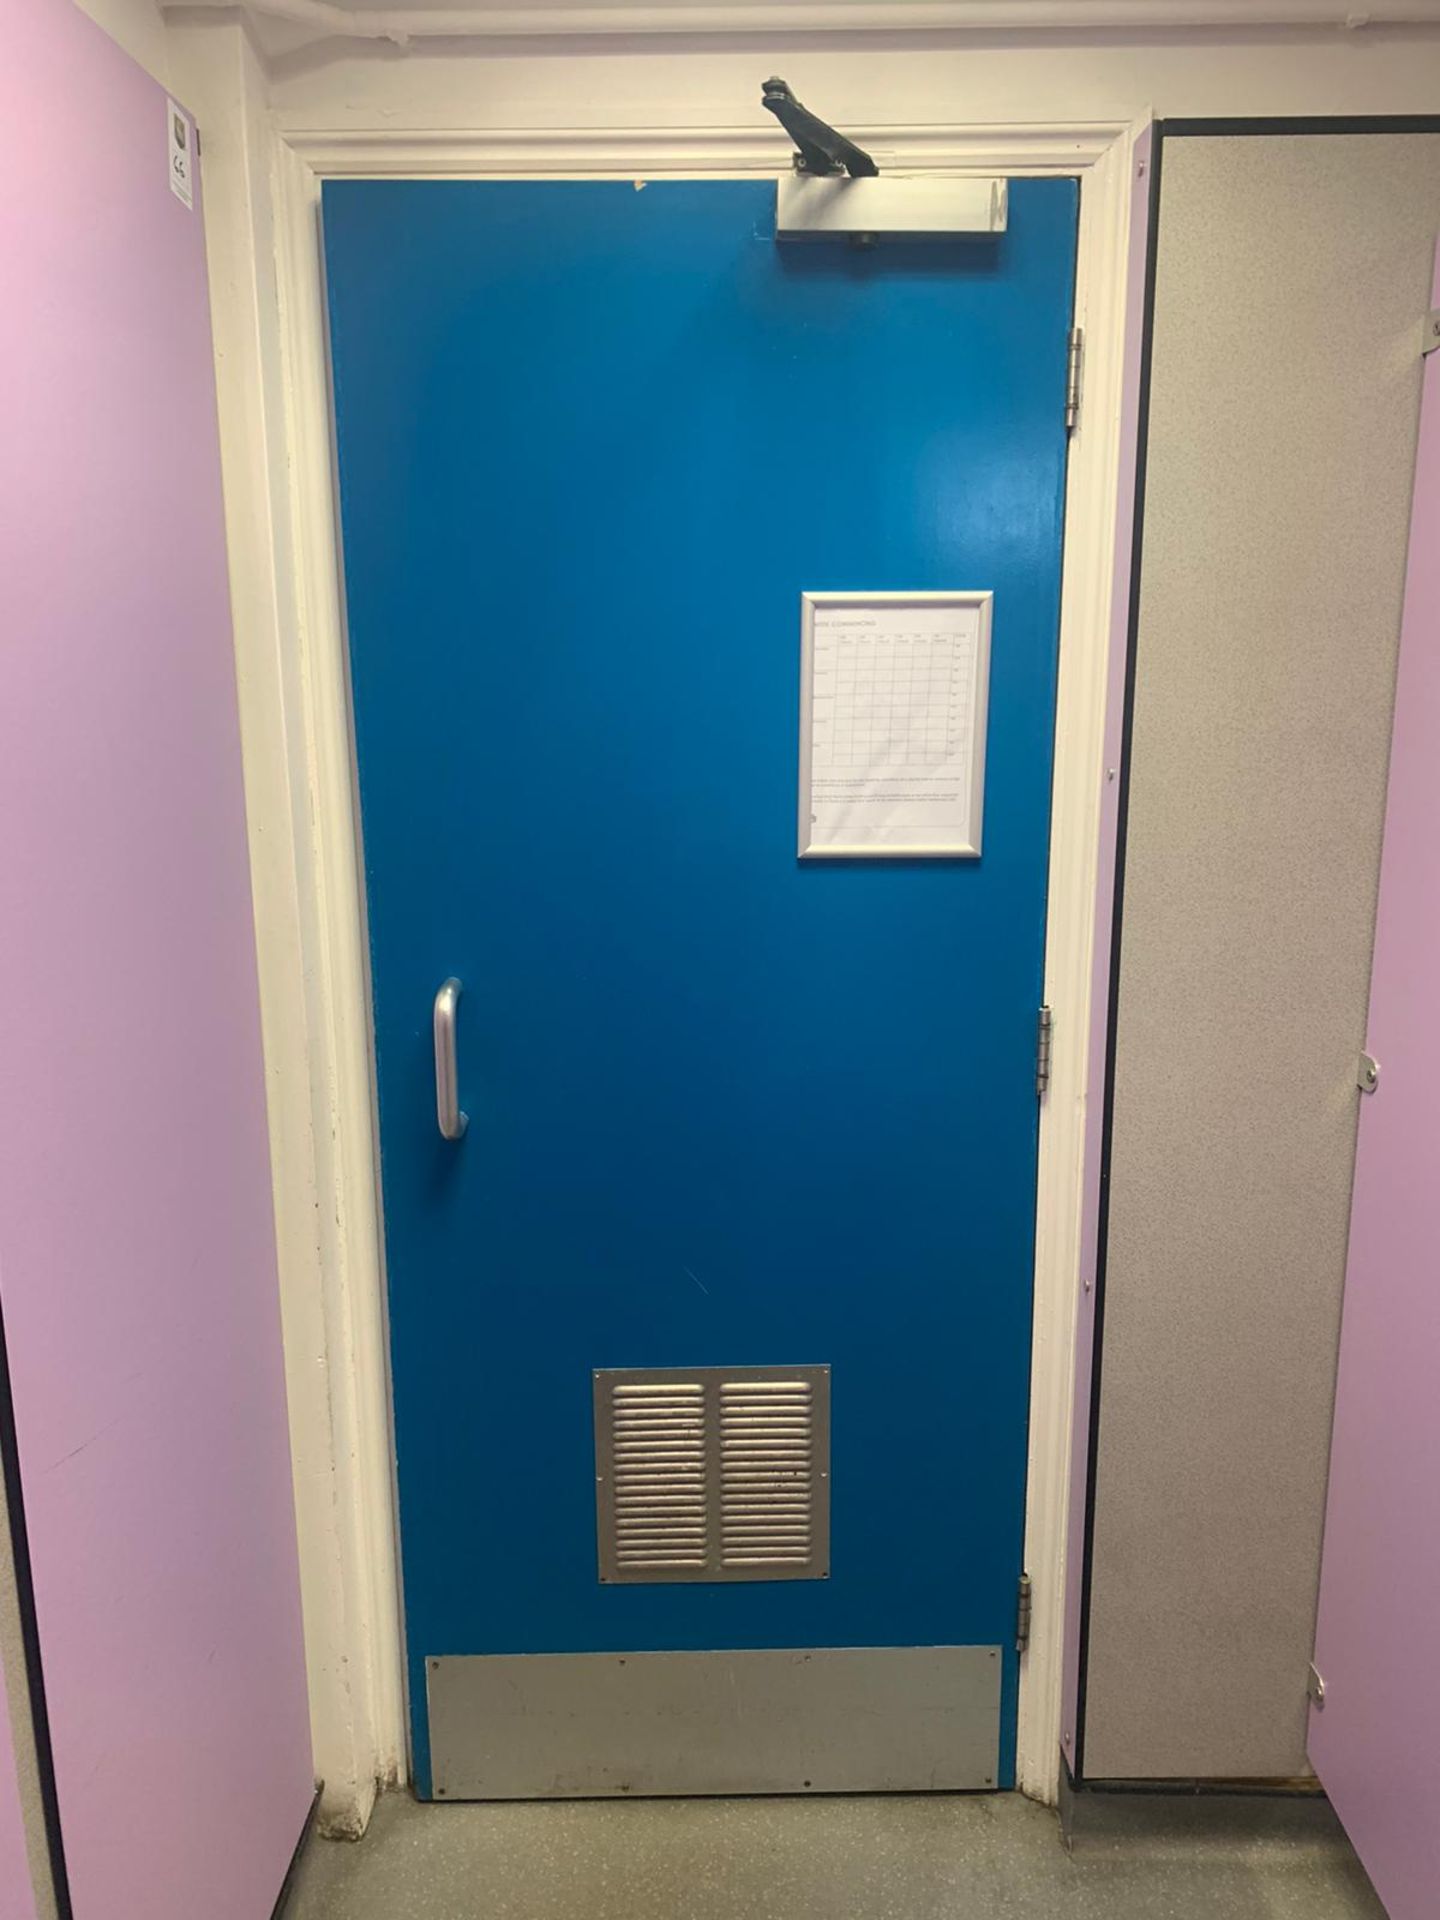 Toilet Door with Vent - Image 2 of 3